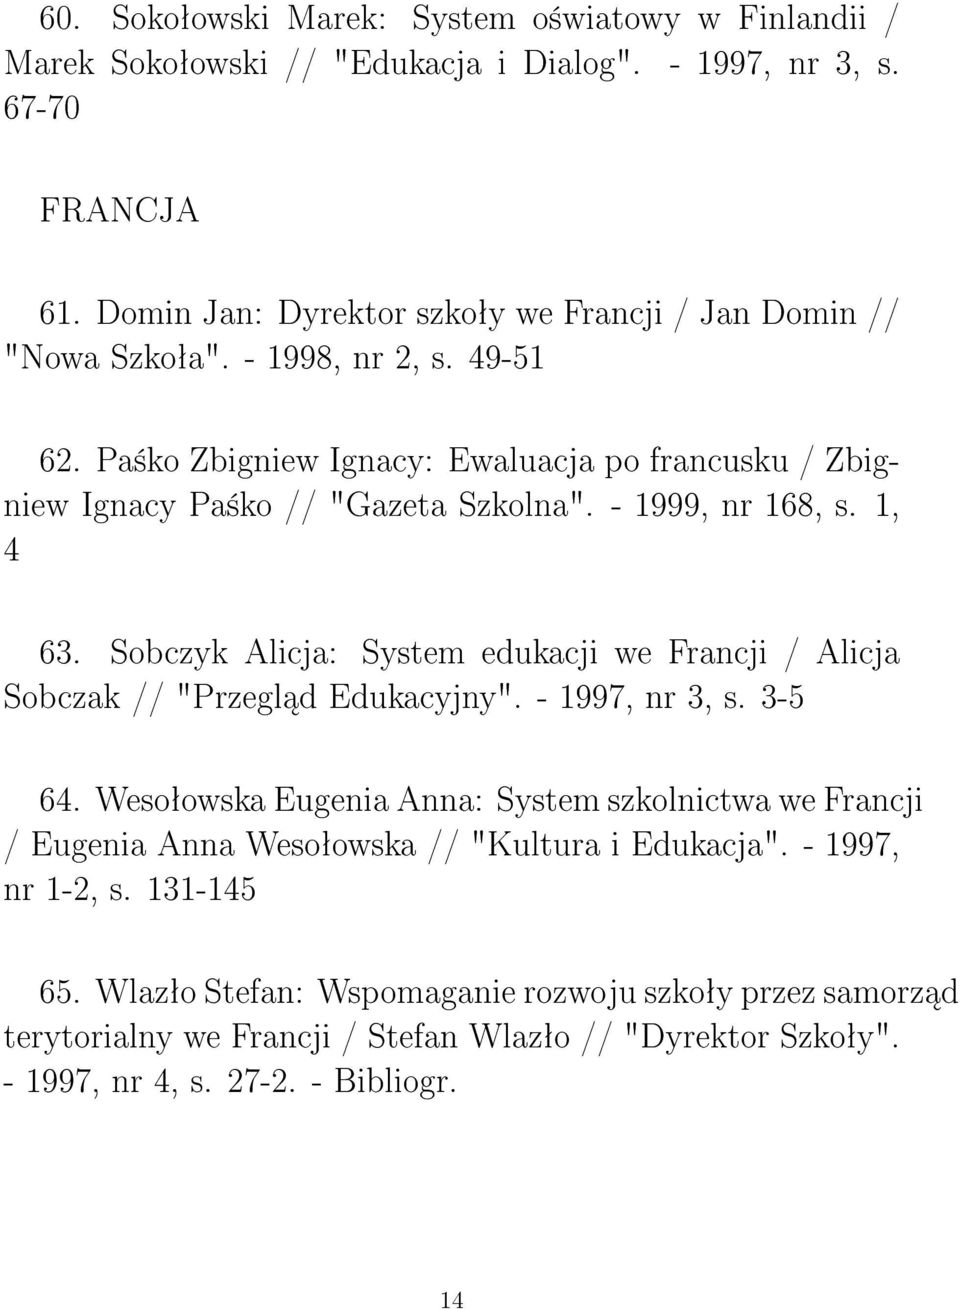 - 1999, nr 168, s. 1, 4 63. Sobczyk Alicja: System edukacji we Francji / Alicja Sobczak // "Przegl d Edukacyjny". - 1997, nr 3, s. 3-5 64.